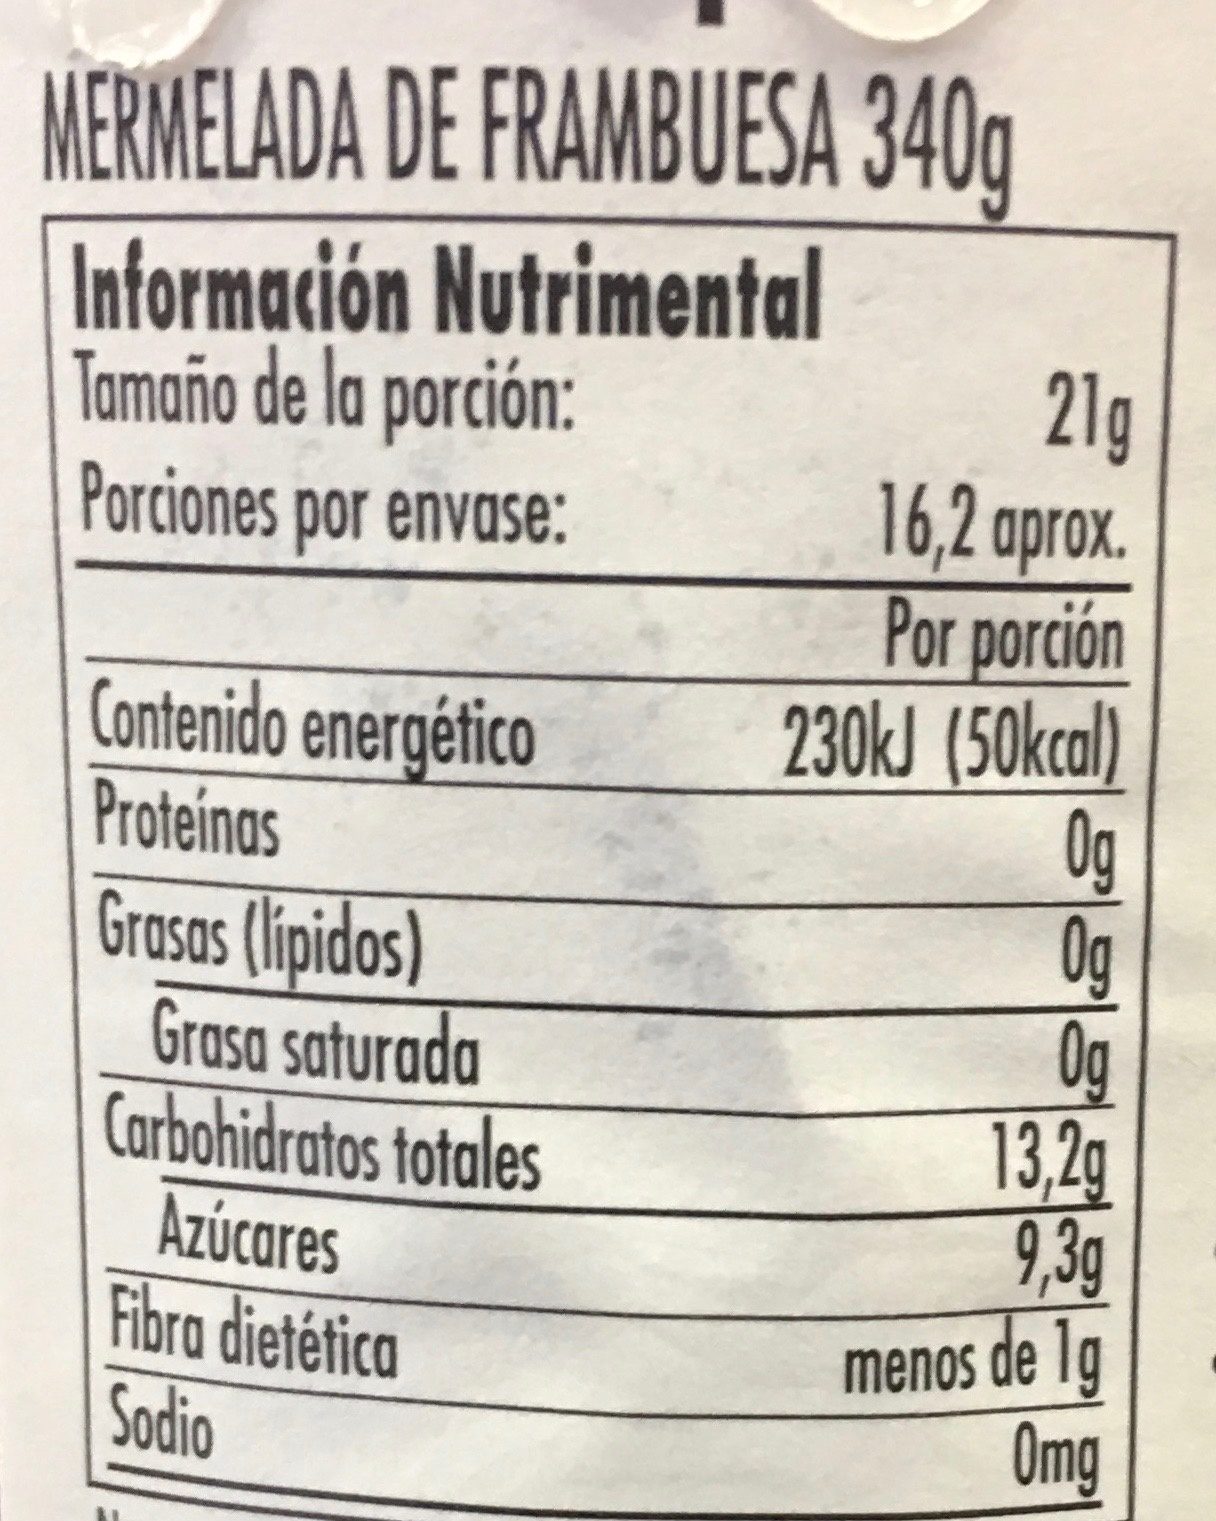 MERMELADA DE FRAMBUESA - Nutrition facts - fr